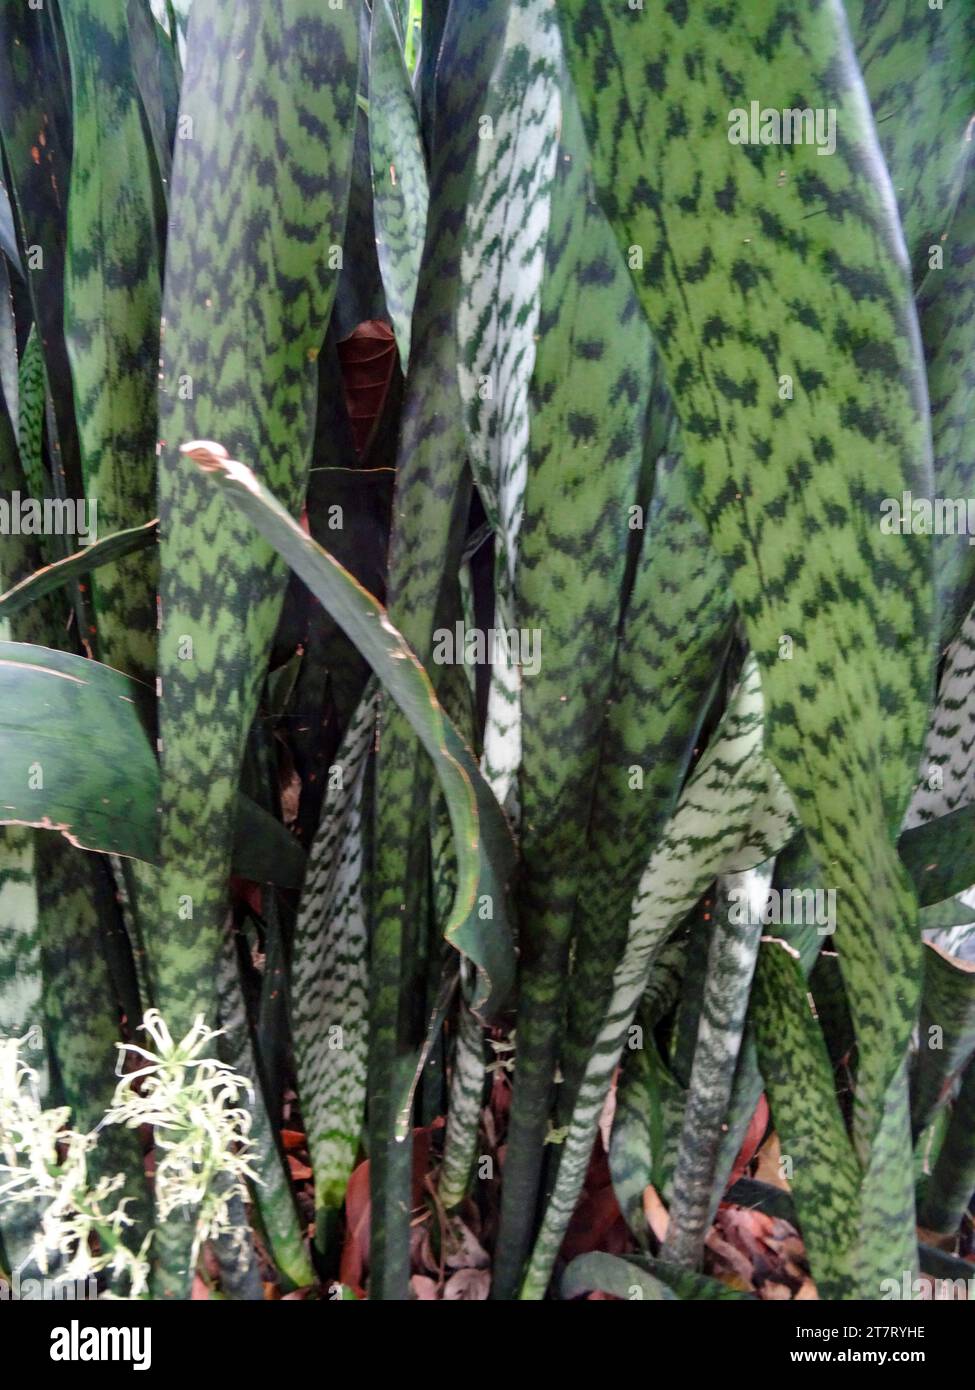 Retrato natural de la planta con flores de primer plano de la lengua de la suegra, Sansevieria trifasciata. Alta resolución con un poco de espacio negativo Foto de stock